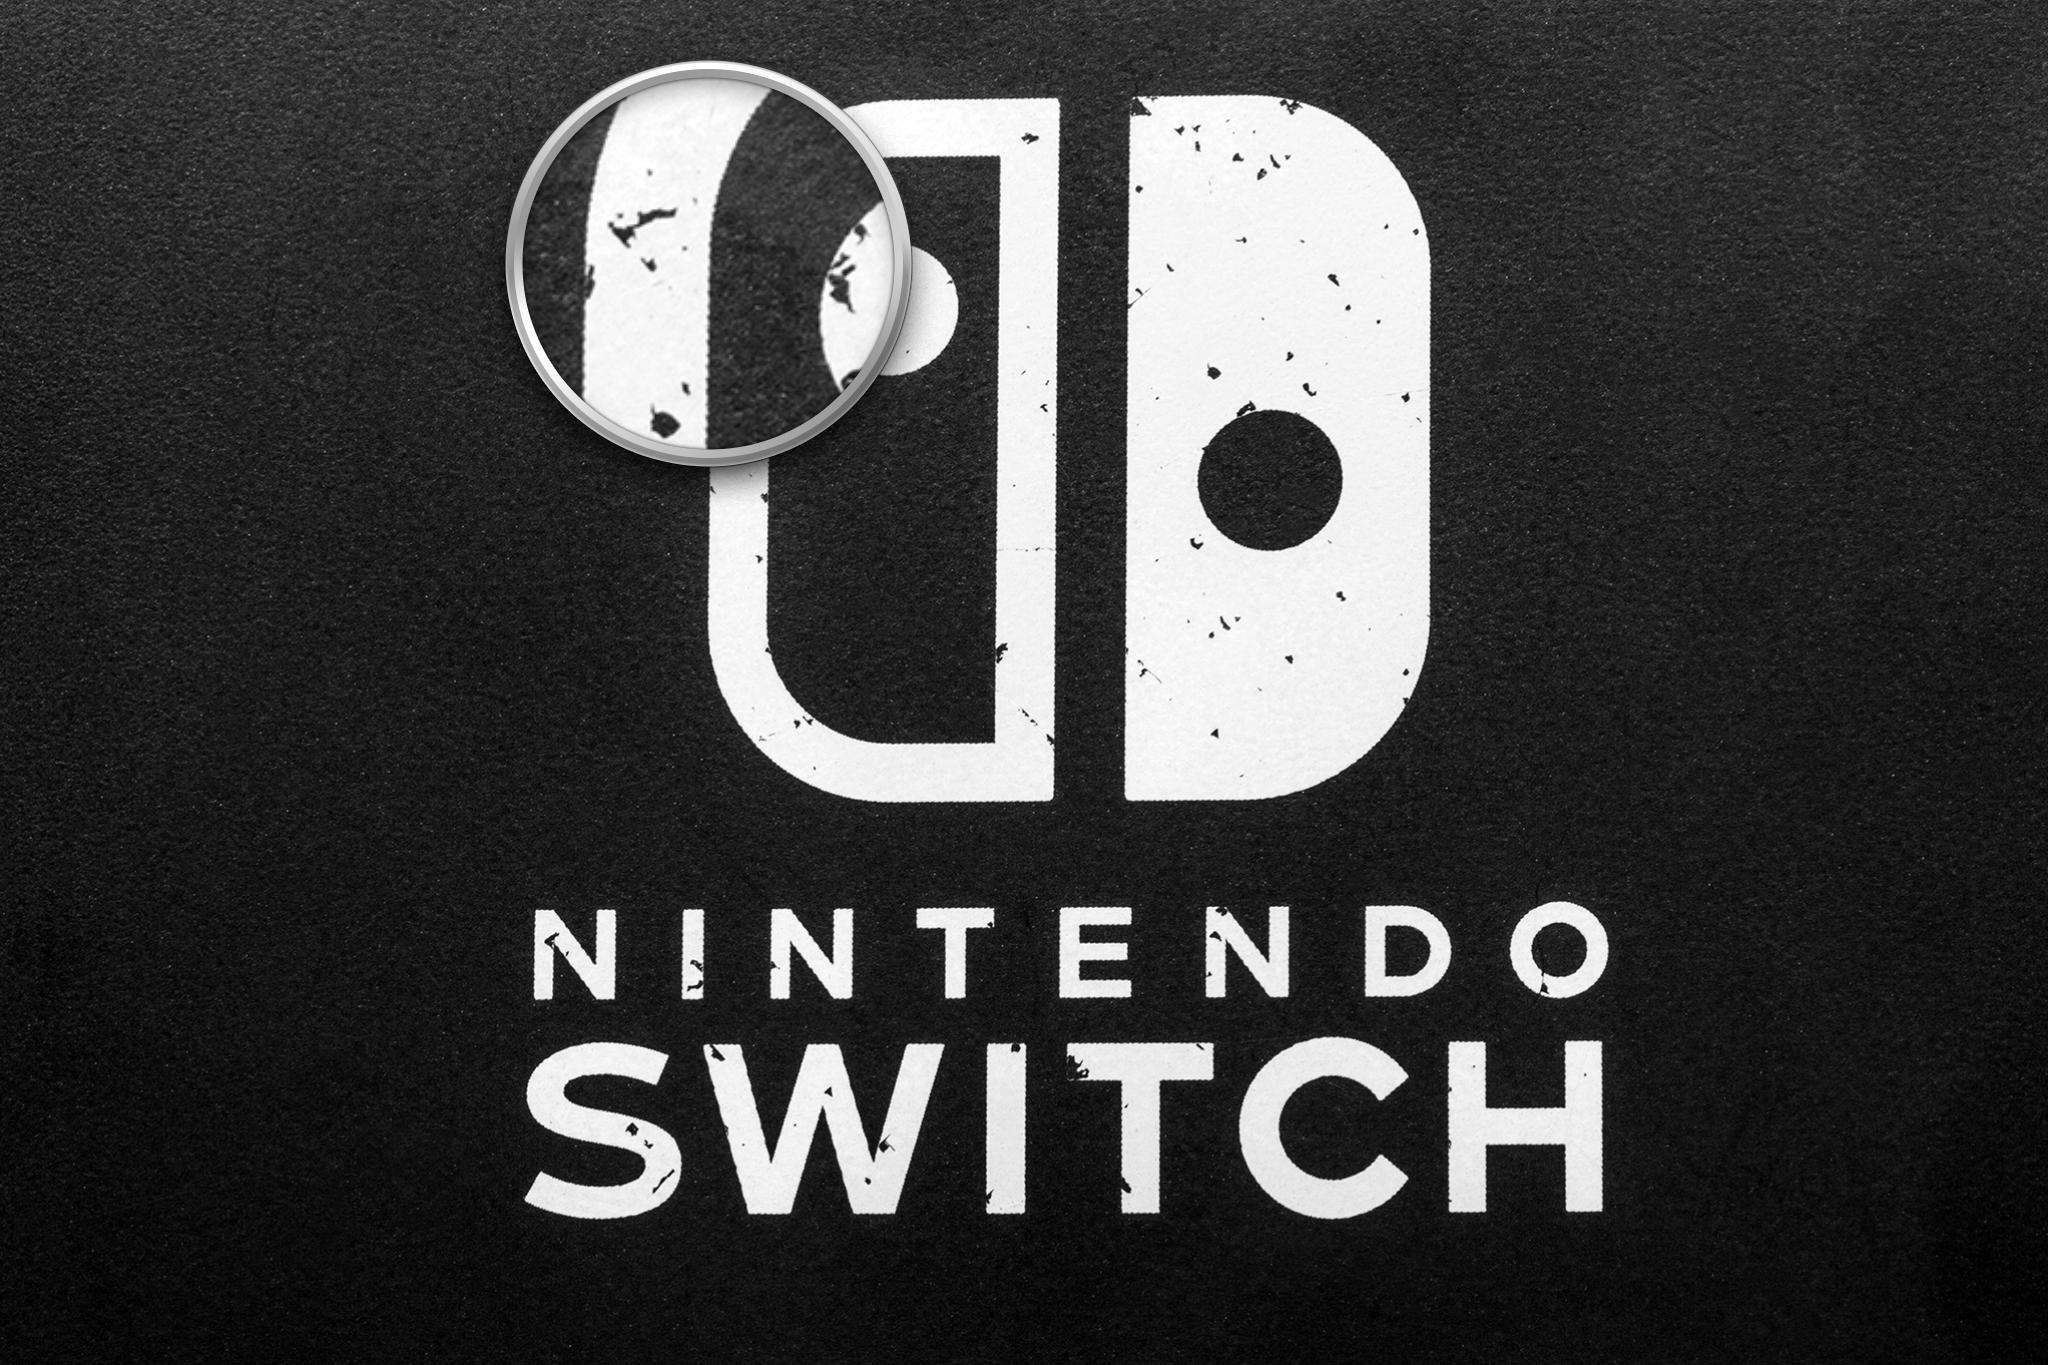 Nintendo Switch. Nie oklejajcie swoich konsol